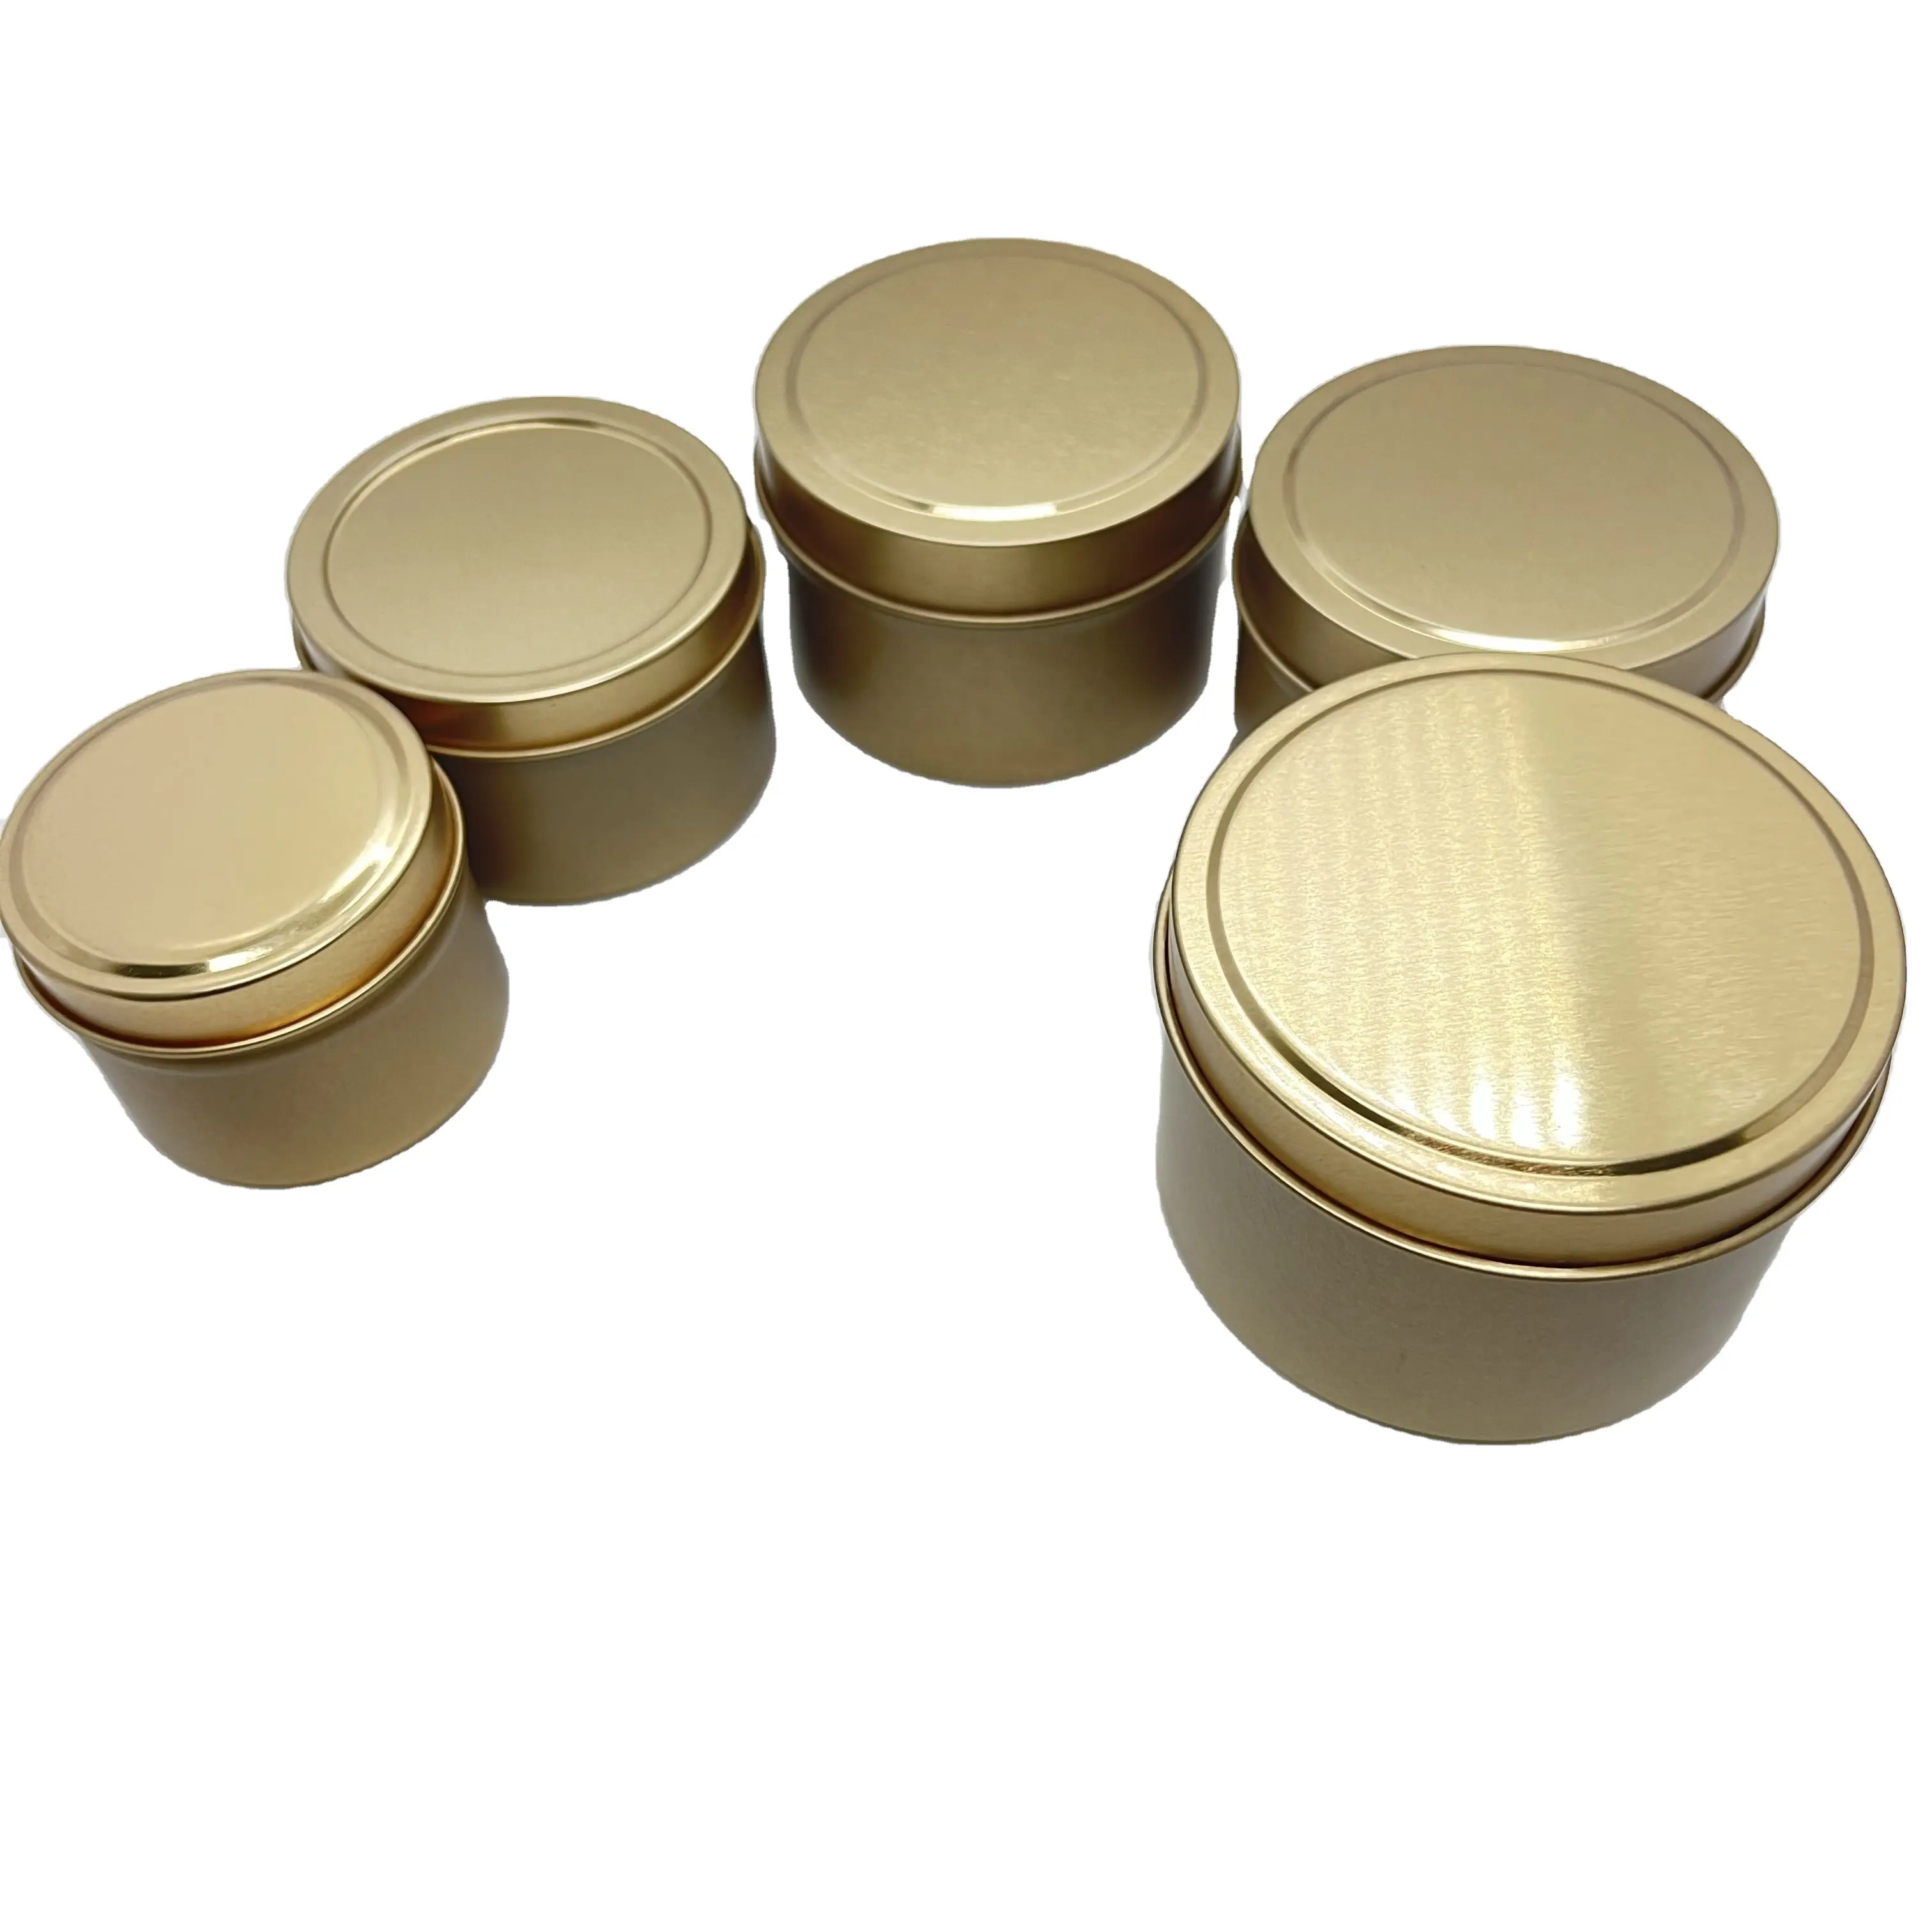 2 ออนซ์ 3 ออนซ์ 4 ออนซ์ทอง/เงิน/Rose gold/สีดํากล่องโลหะกลมสําหรับจัดเก็บเทียน,50 g/100 g ขี้ผึ้งกล่องเหล็กวิลาด